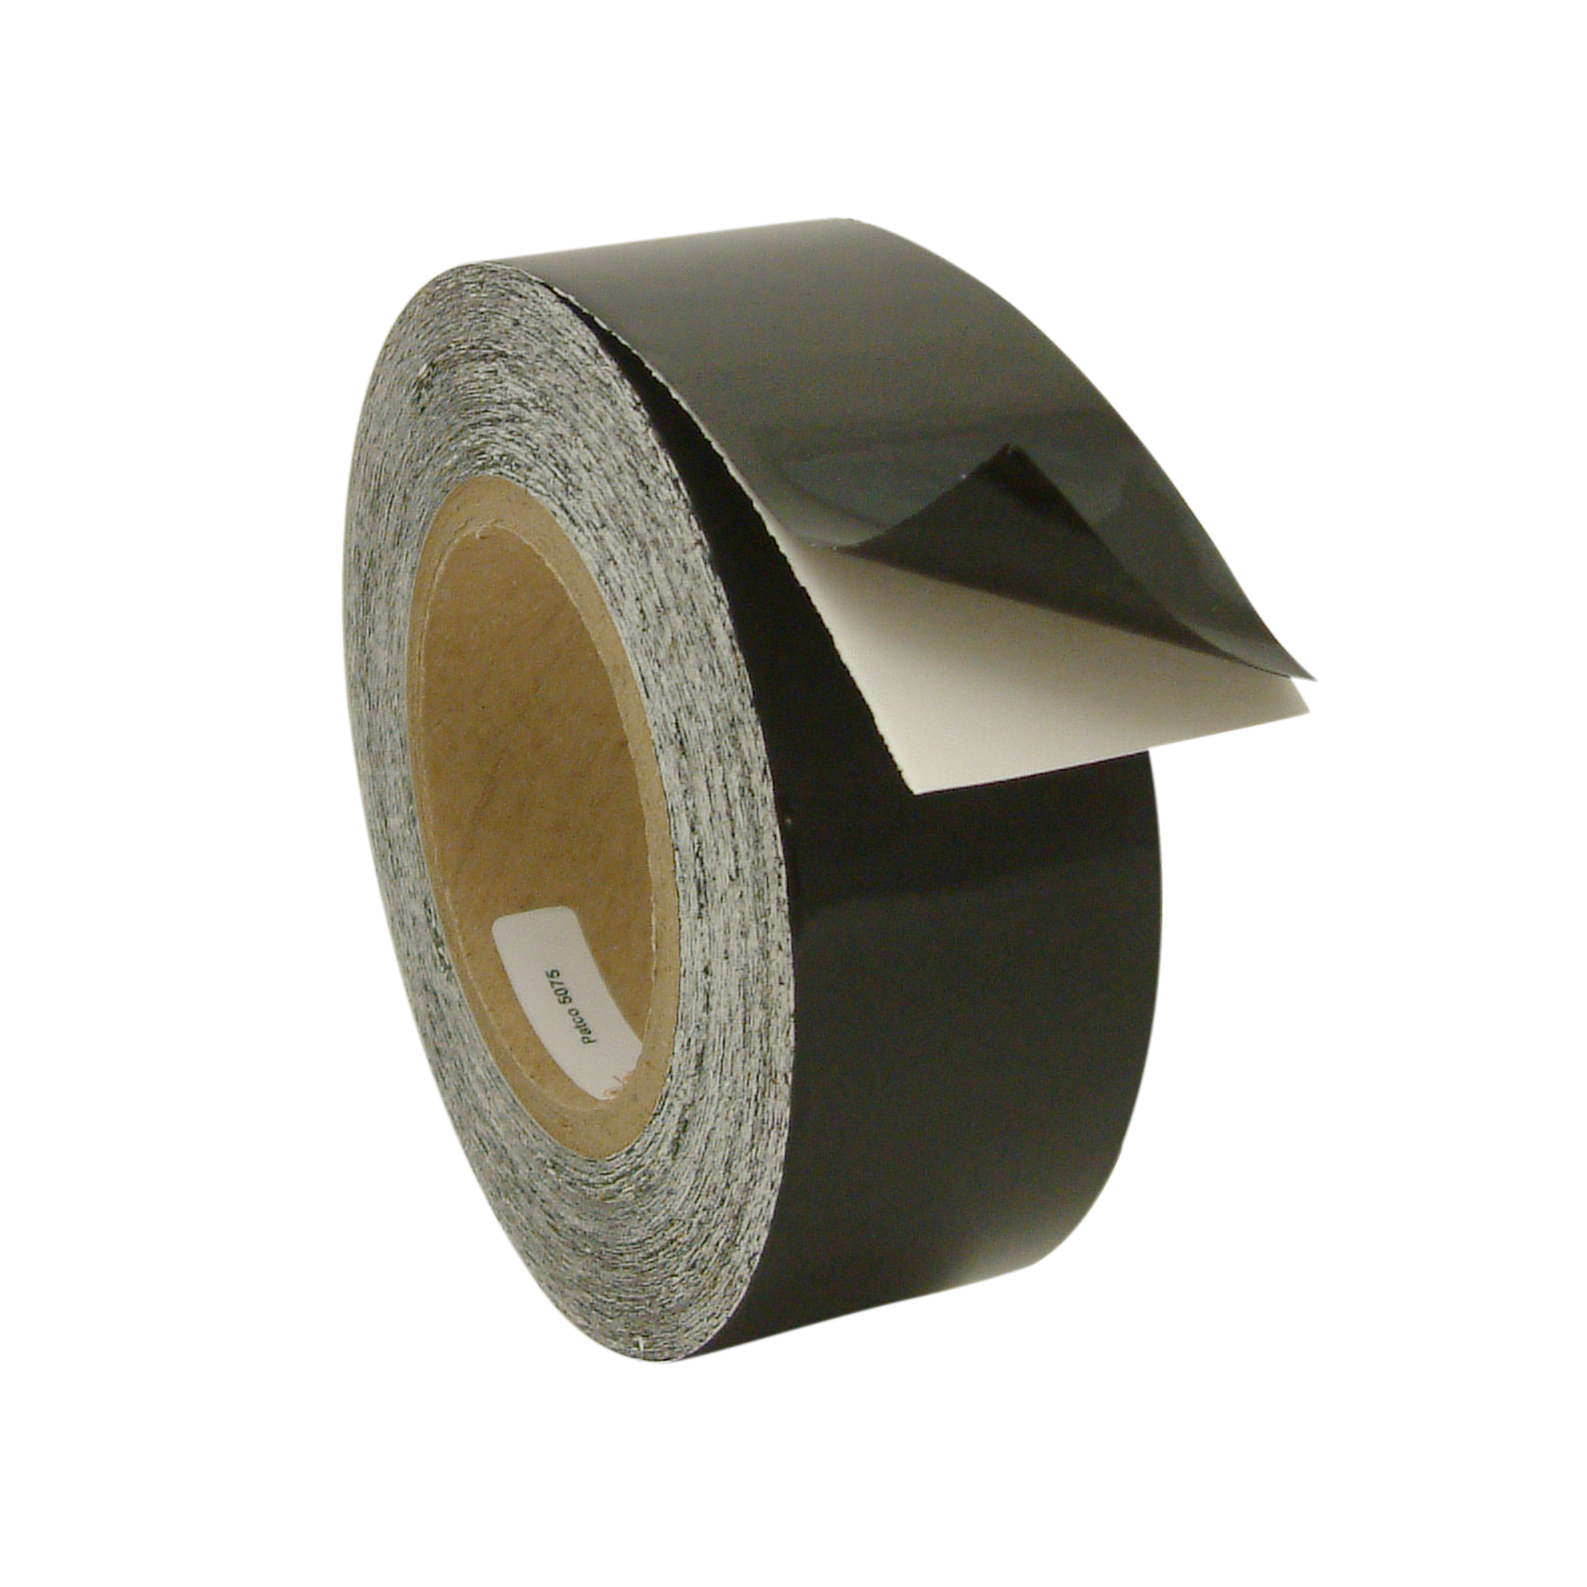 Patco Wire Harness Attachment Tape (5075)